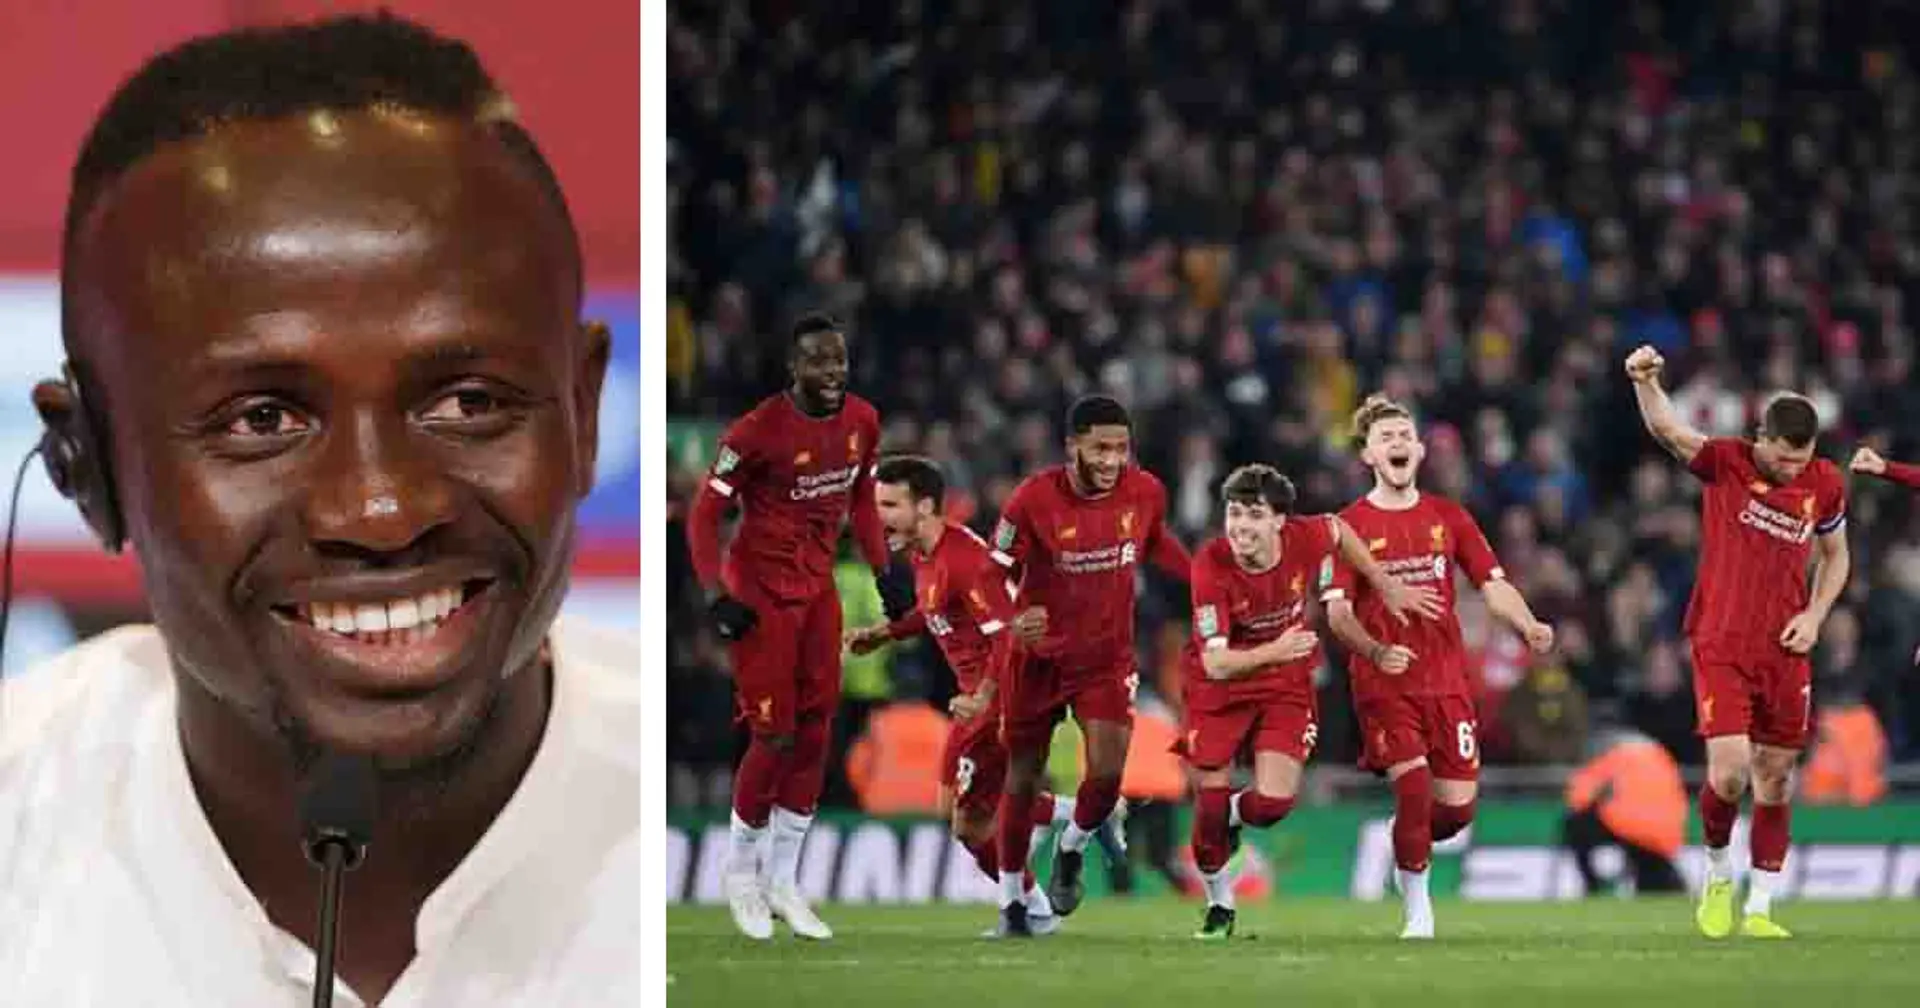 Sadio Mane names ex-Liverpool teammate as best finisher - not Salah